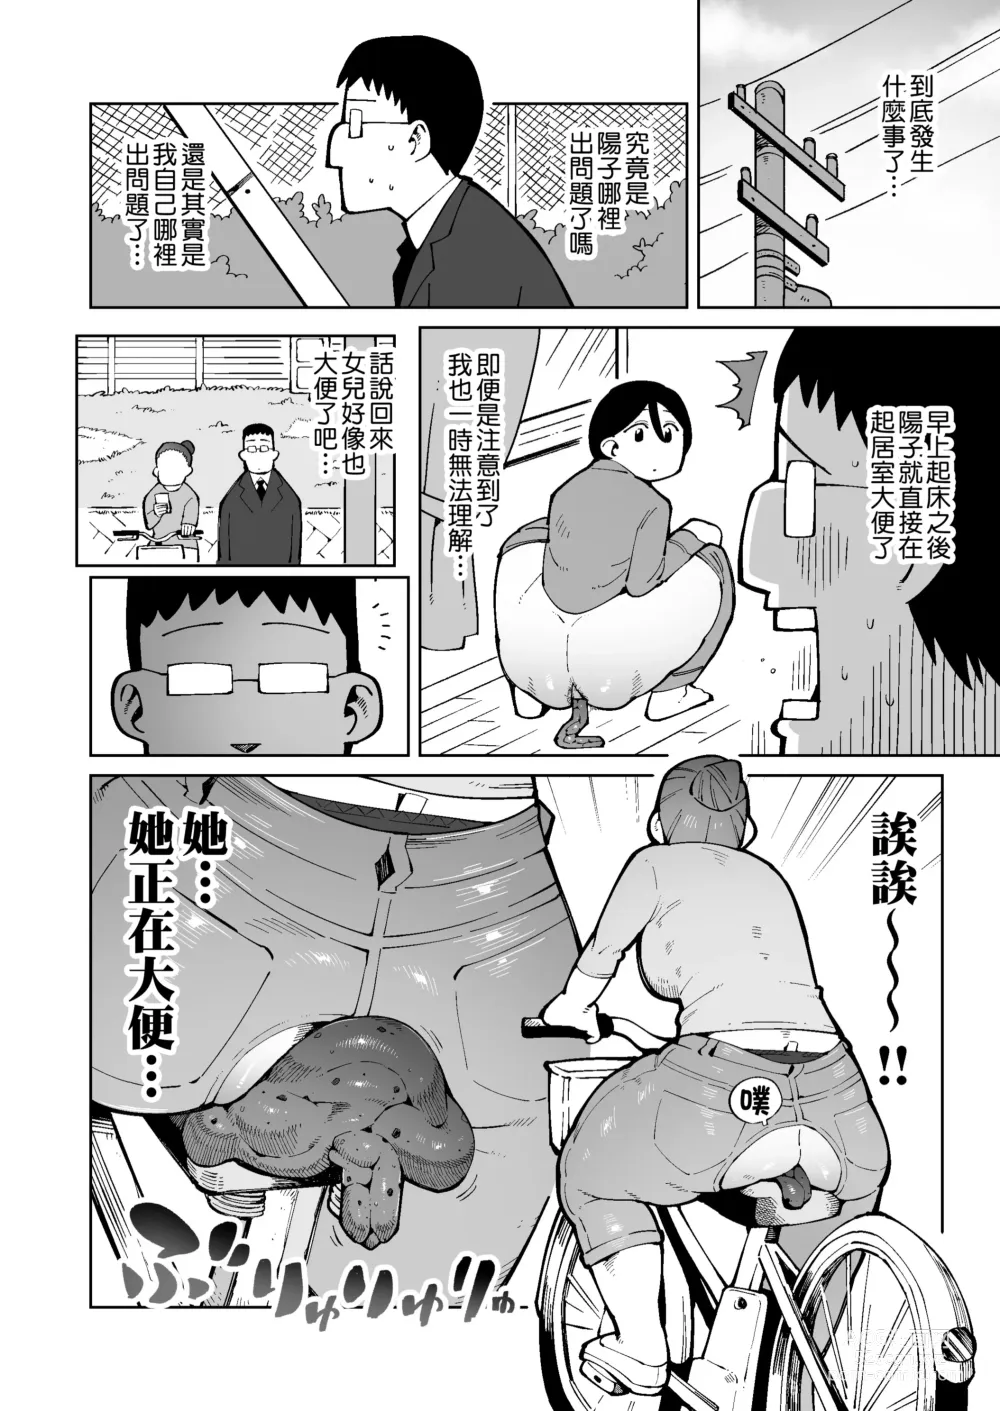 Page 3 of doujinshi 早上一起床發現變成了隨地大便的世界那檔事